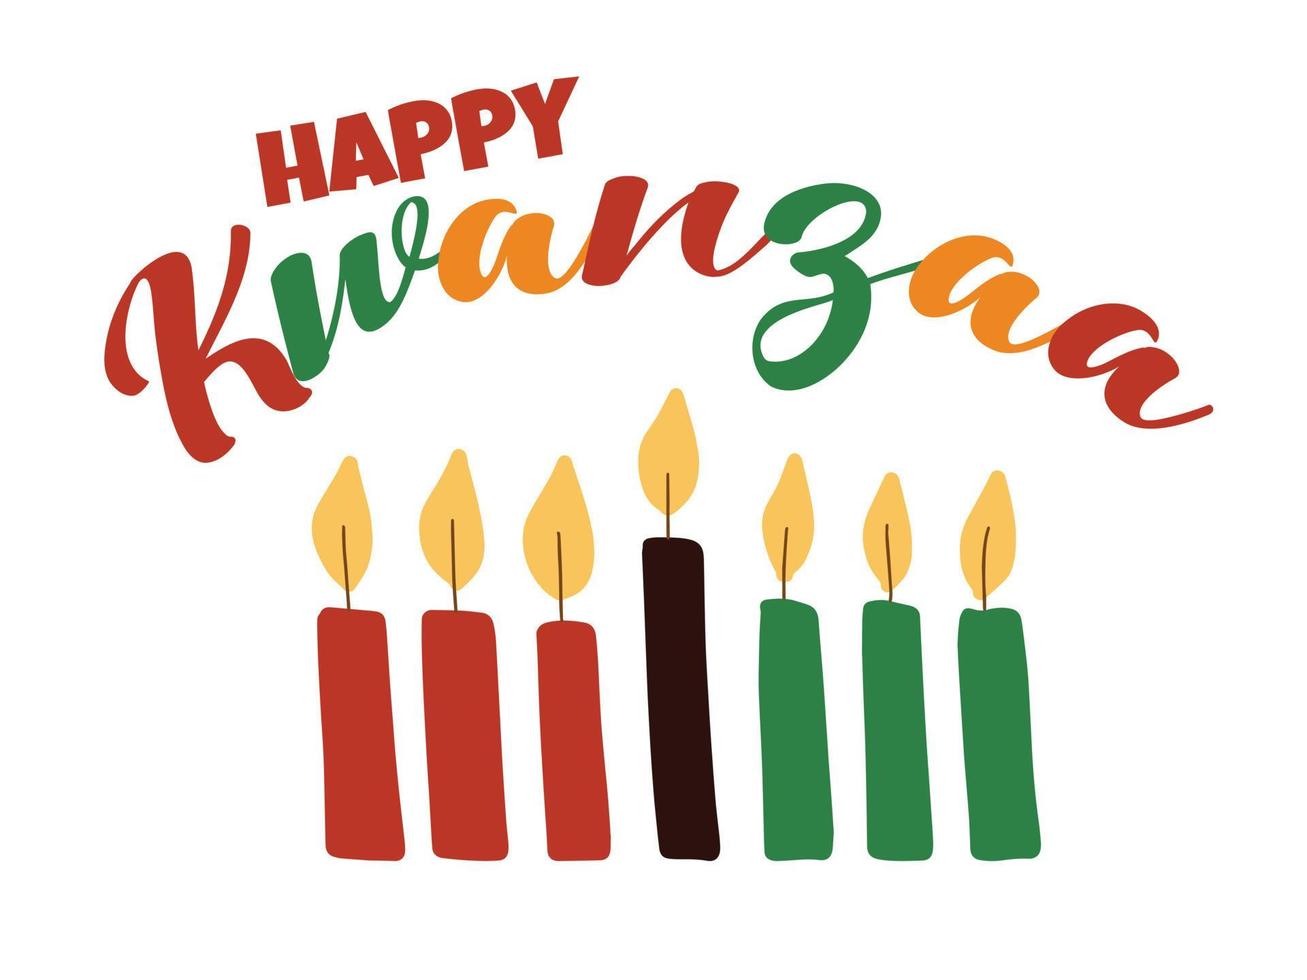 happy kwanzaa - pancarta con letras coloridas y velas kinara simples dibujadas a mano. tarjeta de felicitación del festival de celebración de la herencia afroamericana vector